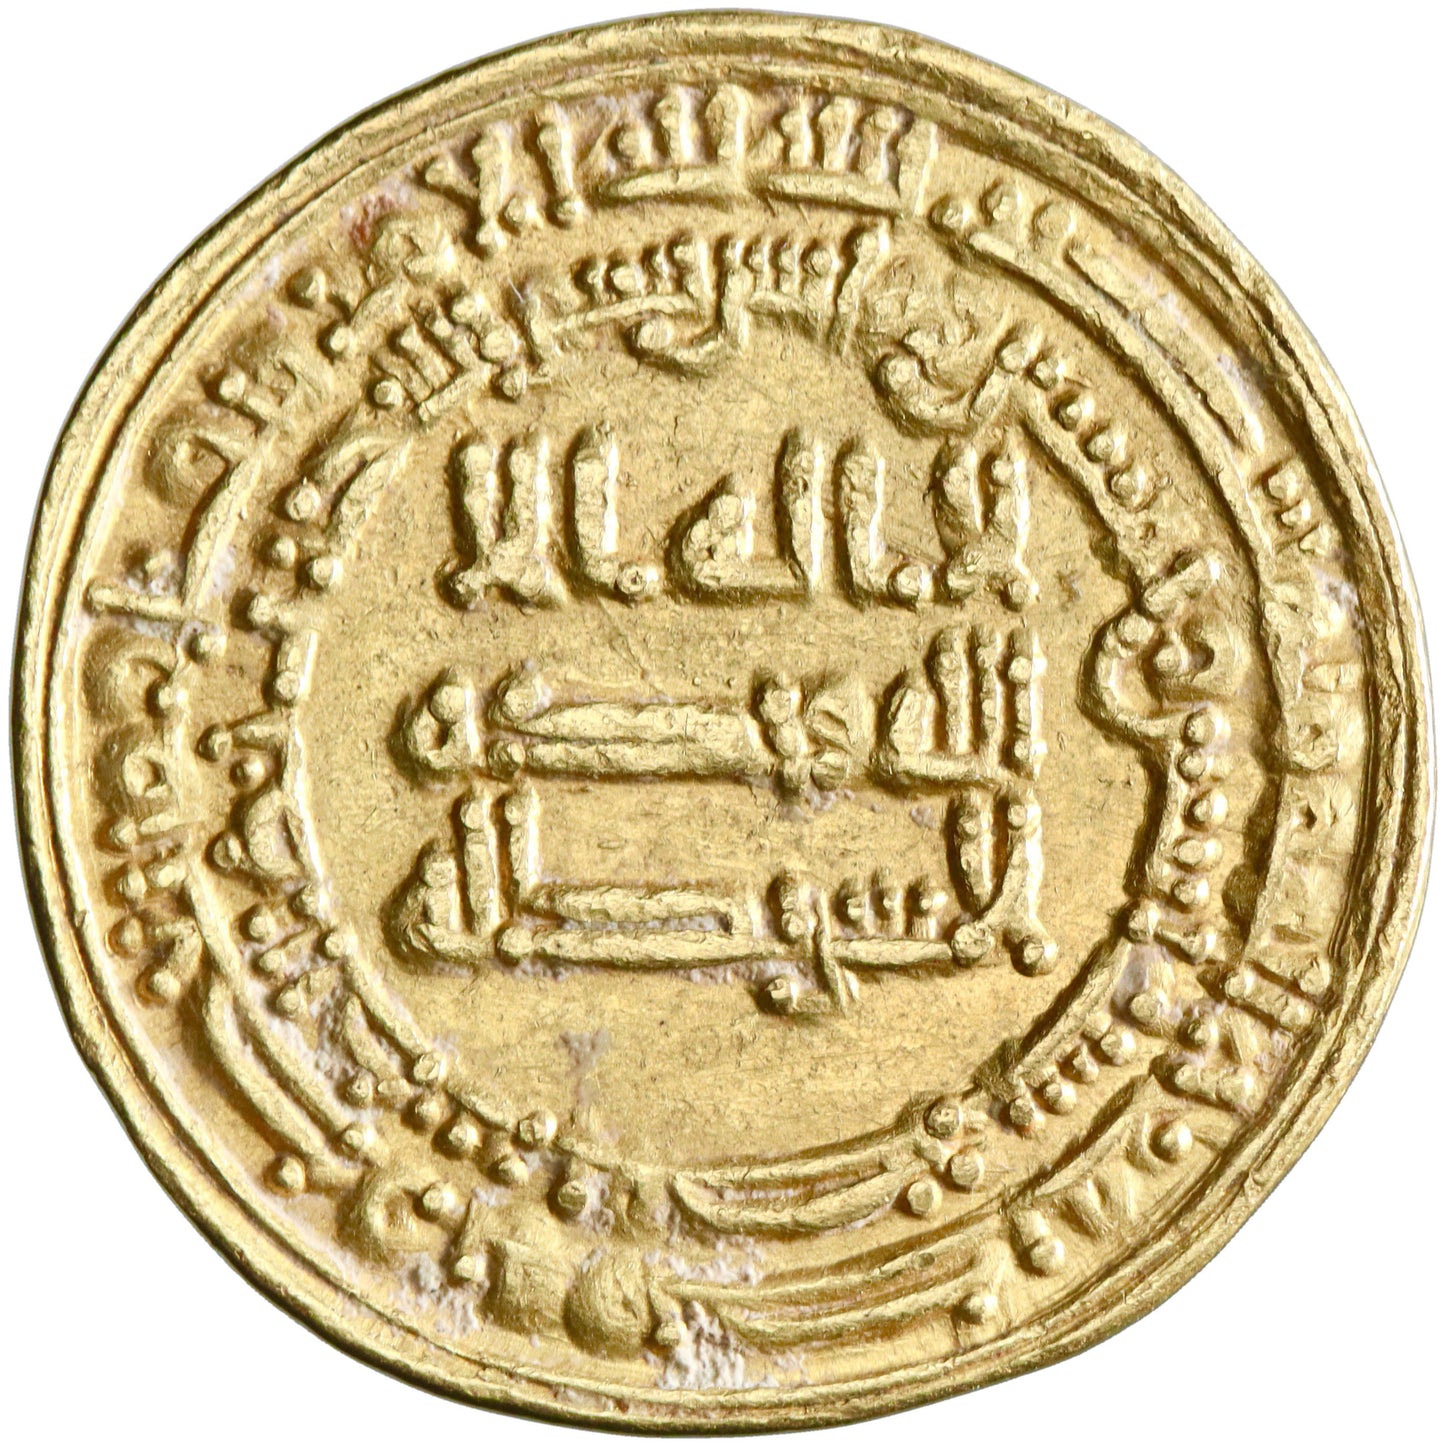 Abbasid, al-Mu'tazz billah, gold dinar, Misr (Egypt) mint, AH 252